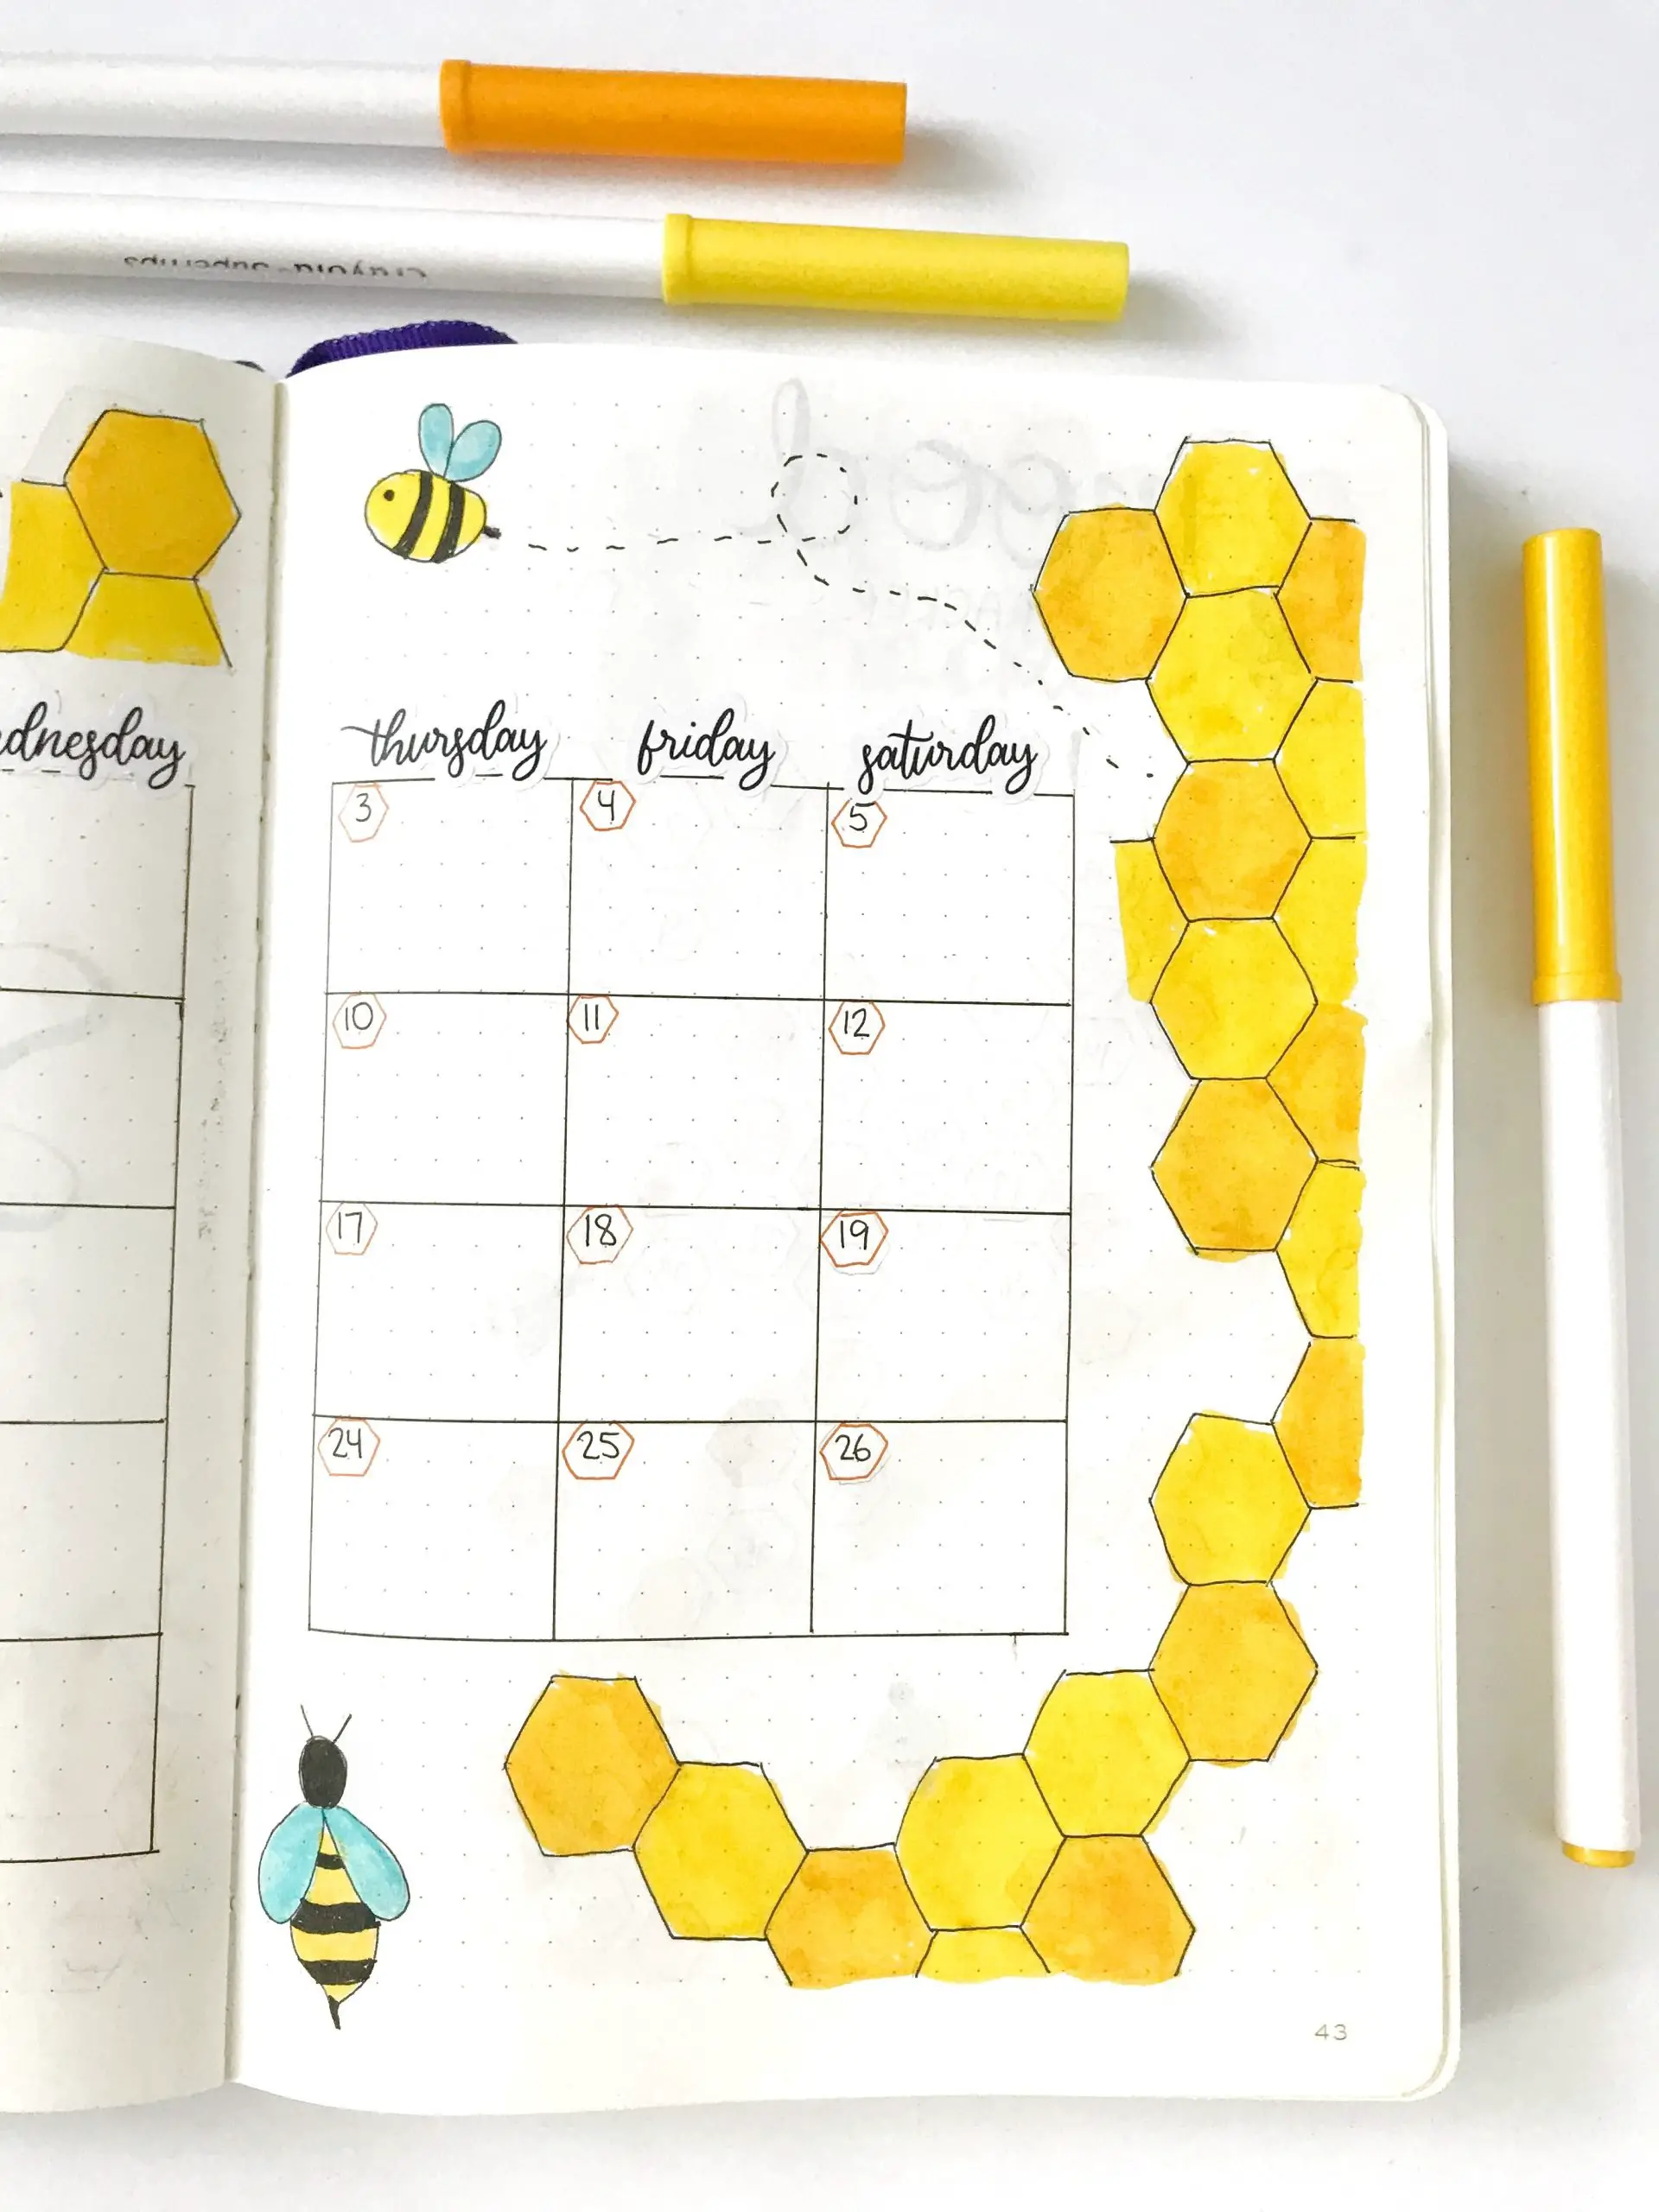 September bullet journal monthly calendar with honeybee theme